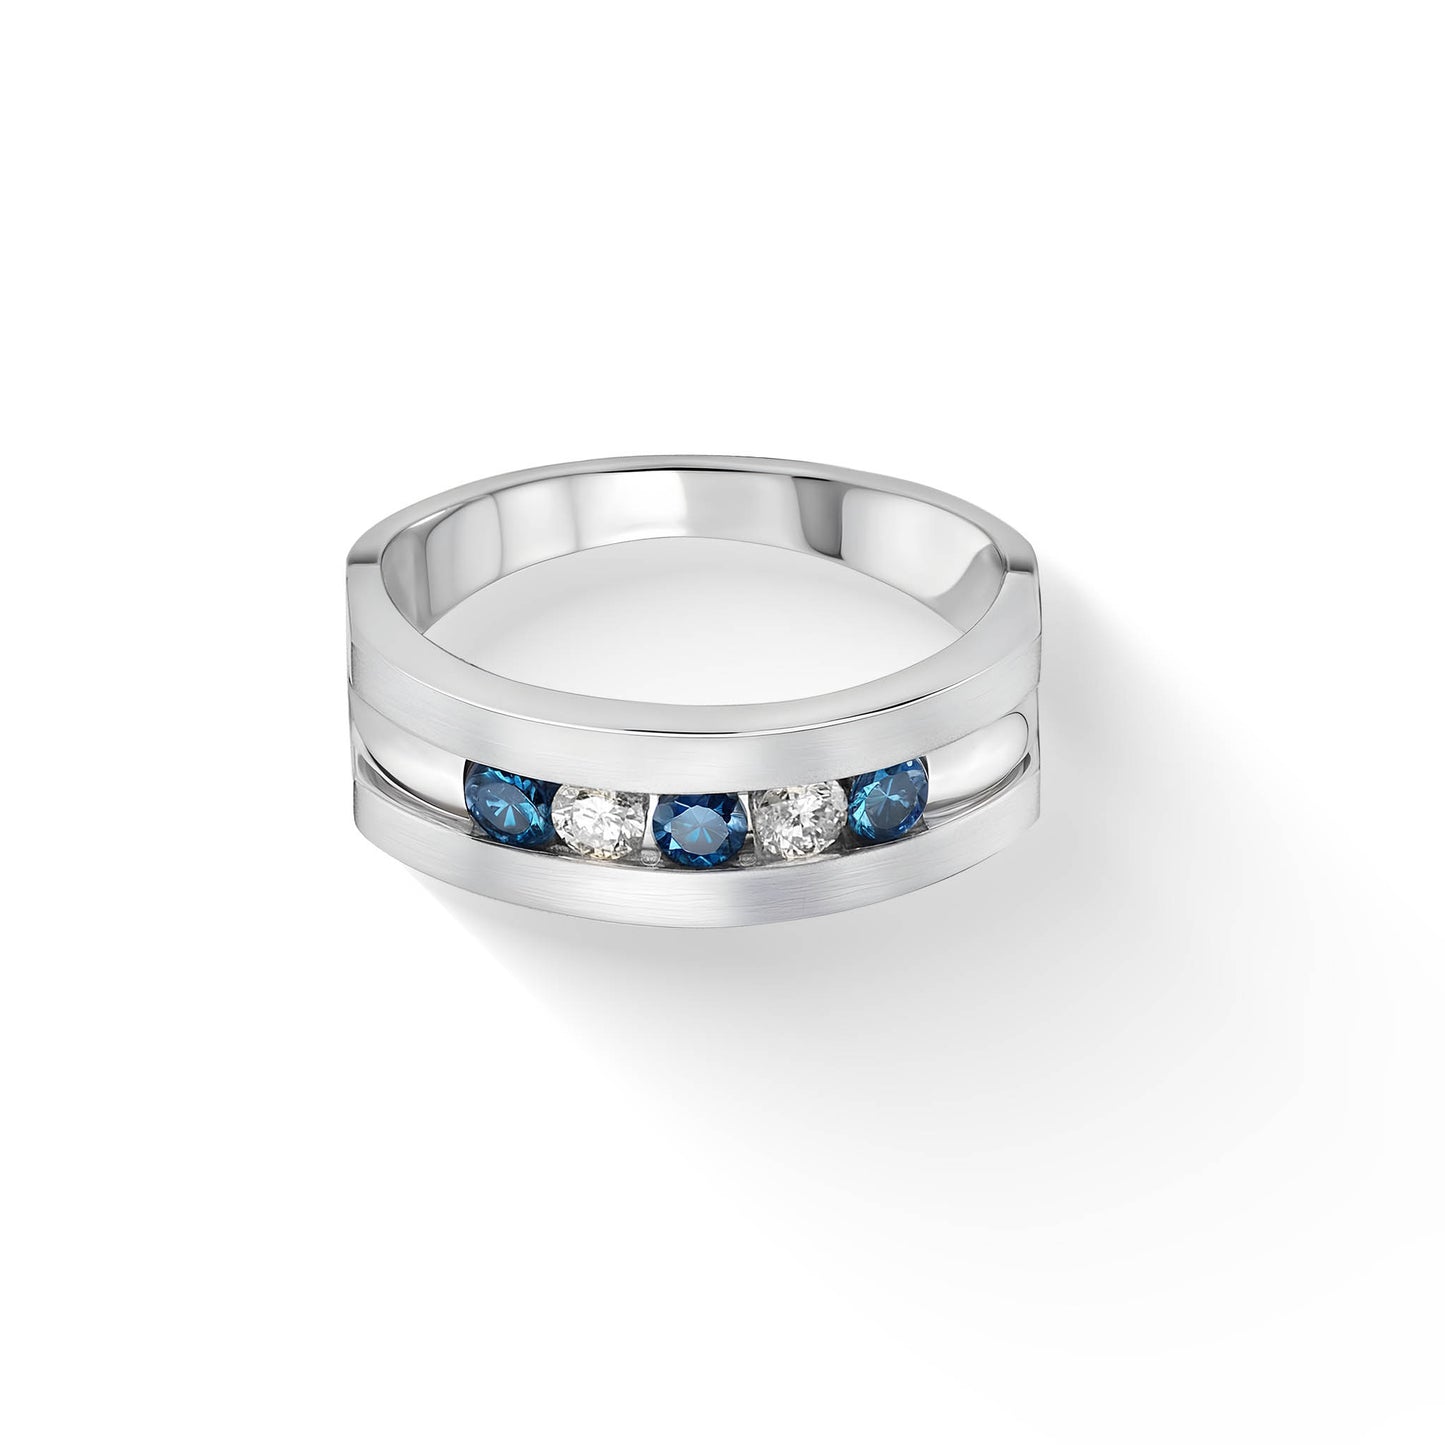 882737 - 14K White Gold - Effy Blue and White Diamond Men's Ring